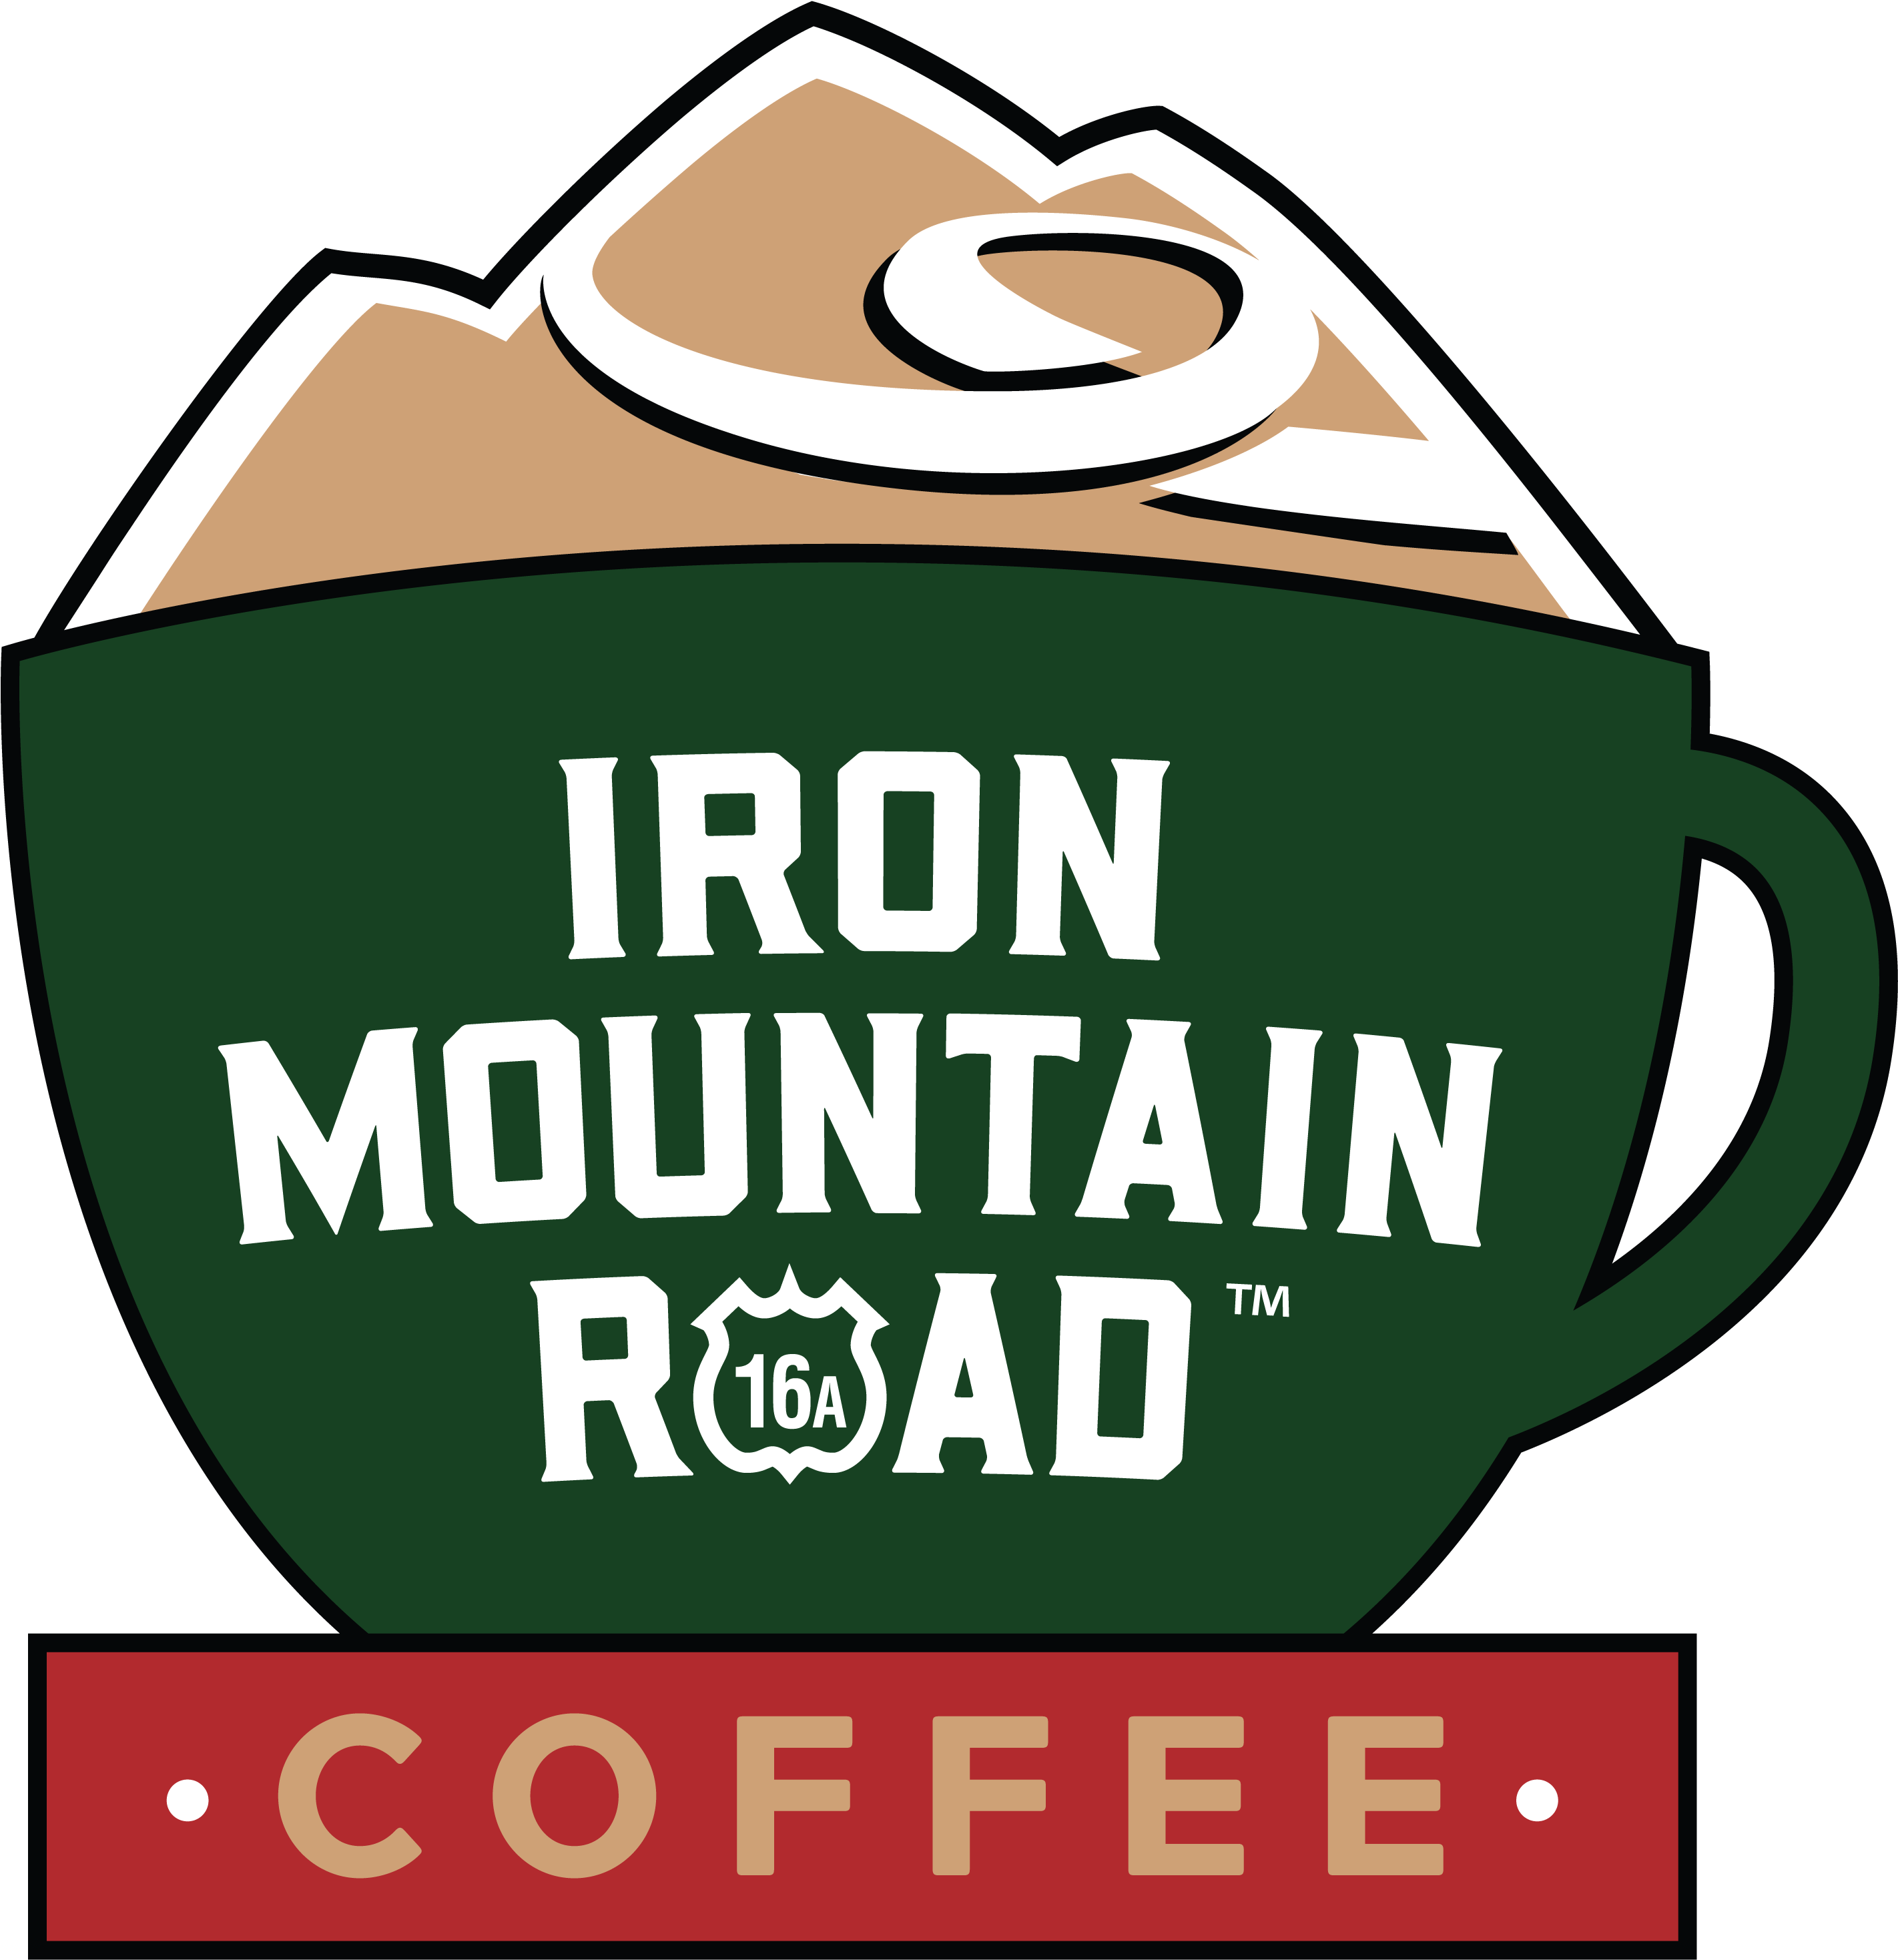 Café & Coffee Shop - Iron Mountain Coffee Shop Logo (2905x2998)